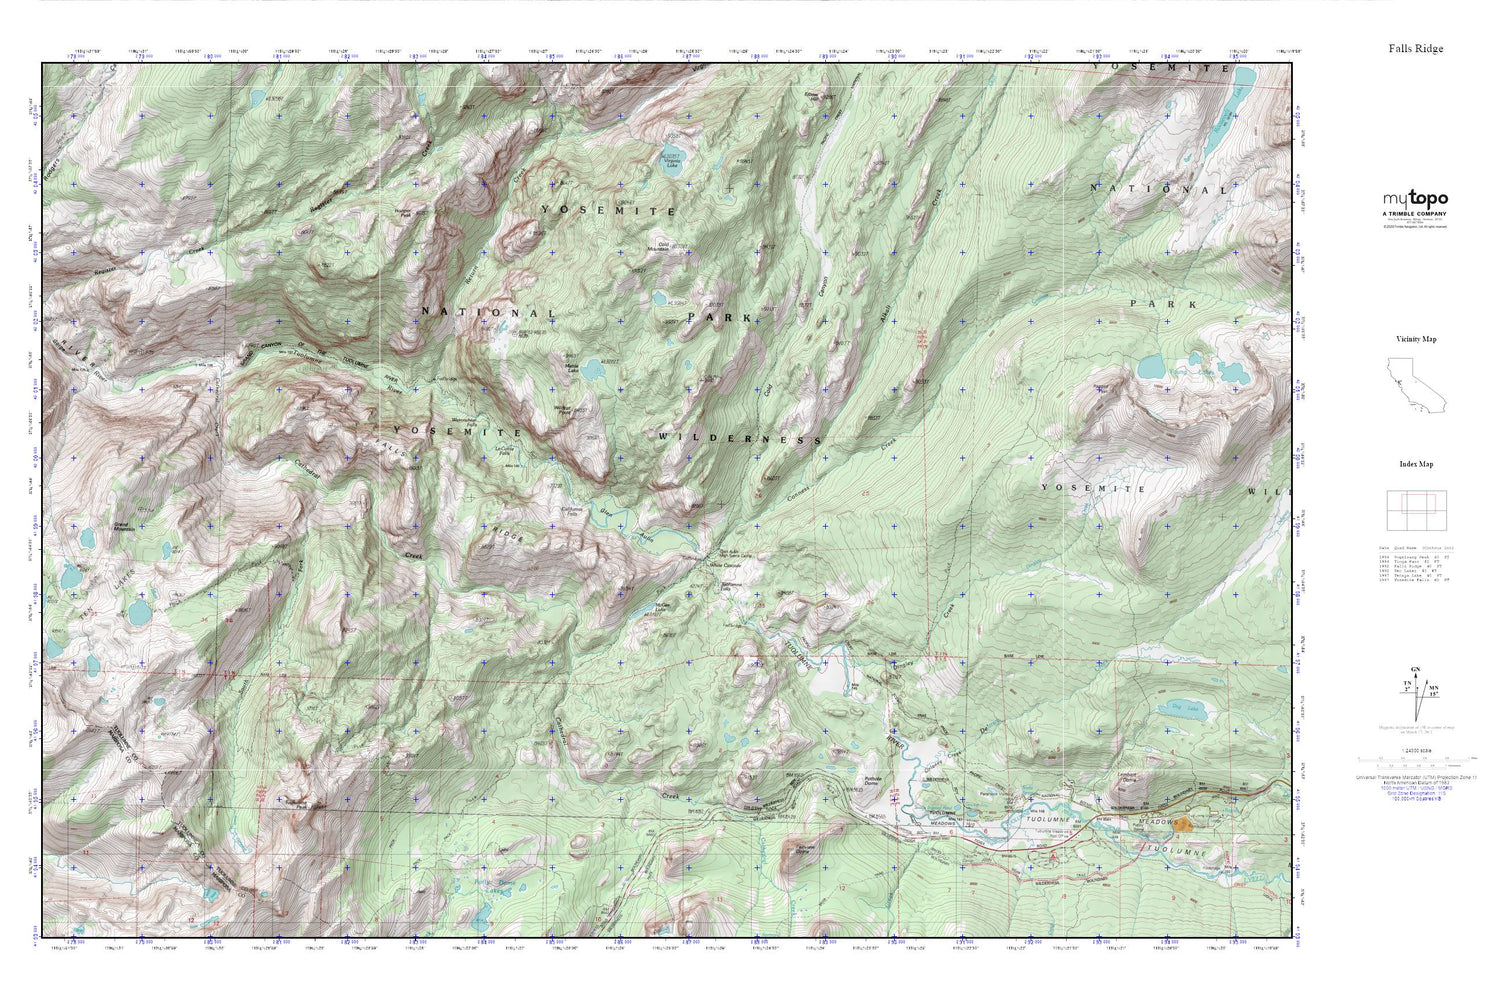 Falls Ridge MyTopo Explorer Series Map Image